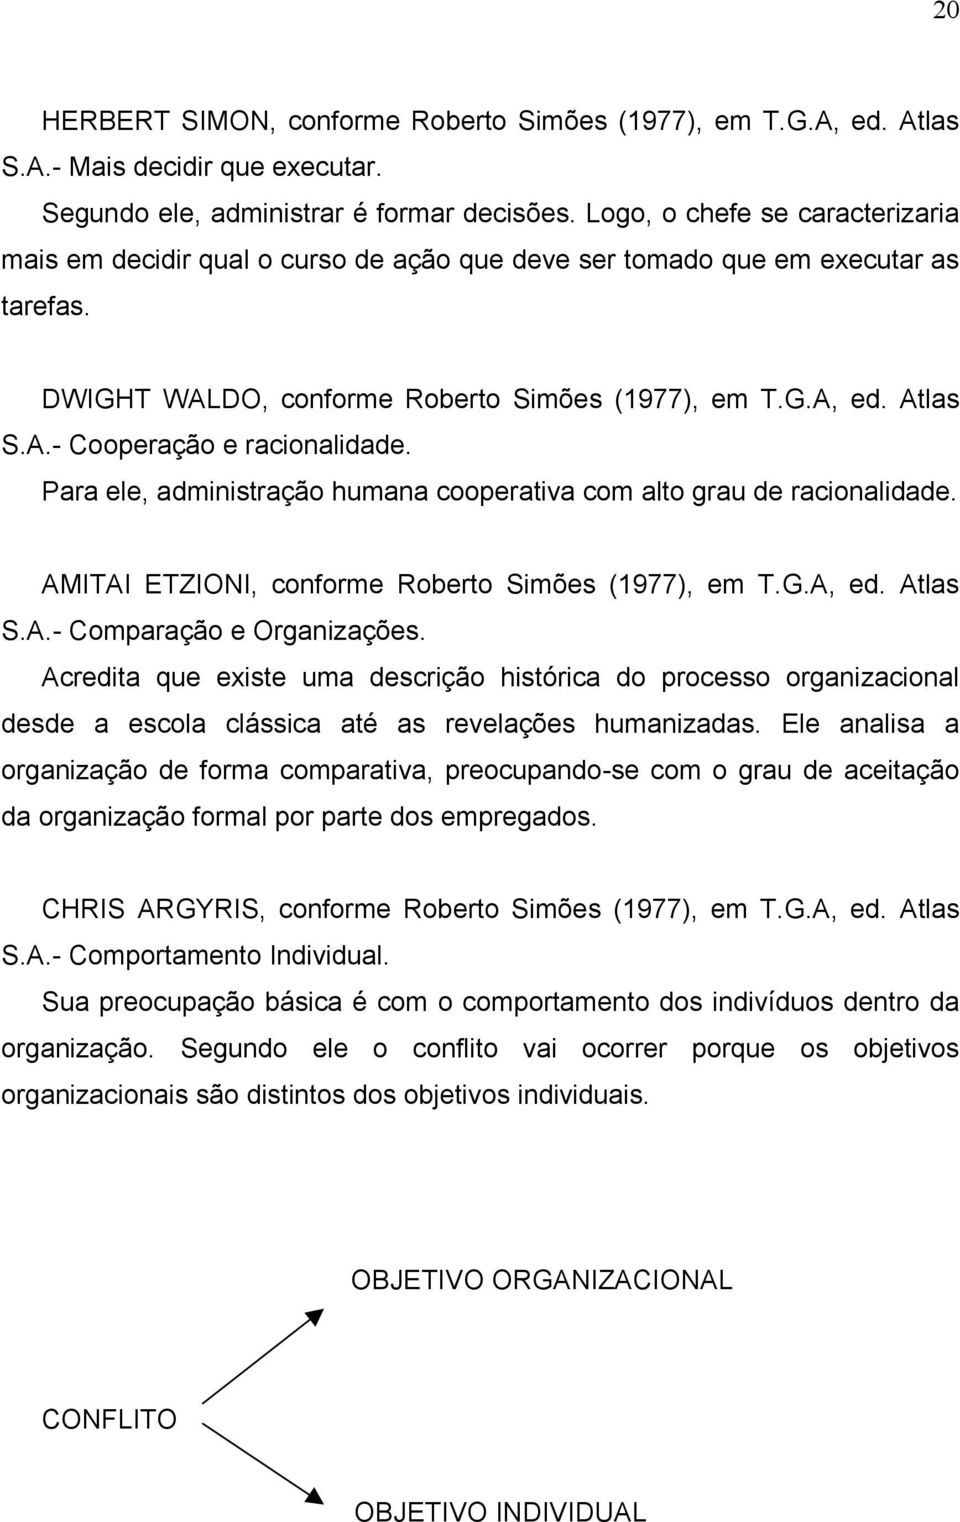 Para ele, administração humana cooperativa com alto grau de racionalidade. AMITAI ETZIONI, conforme Roberto Simões (1977), em T.G.A, ed. Atlas S.A.- Comparação e Organizações.